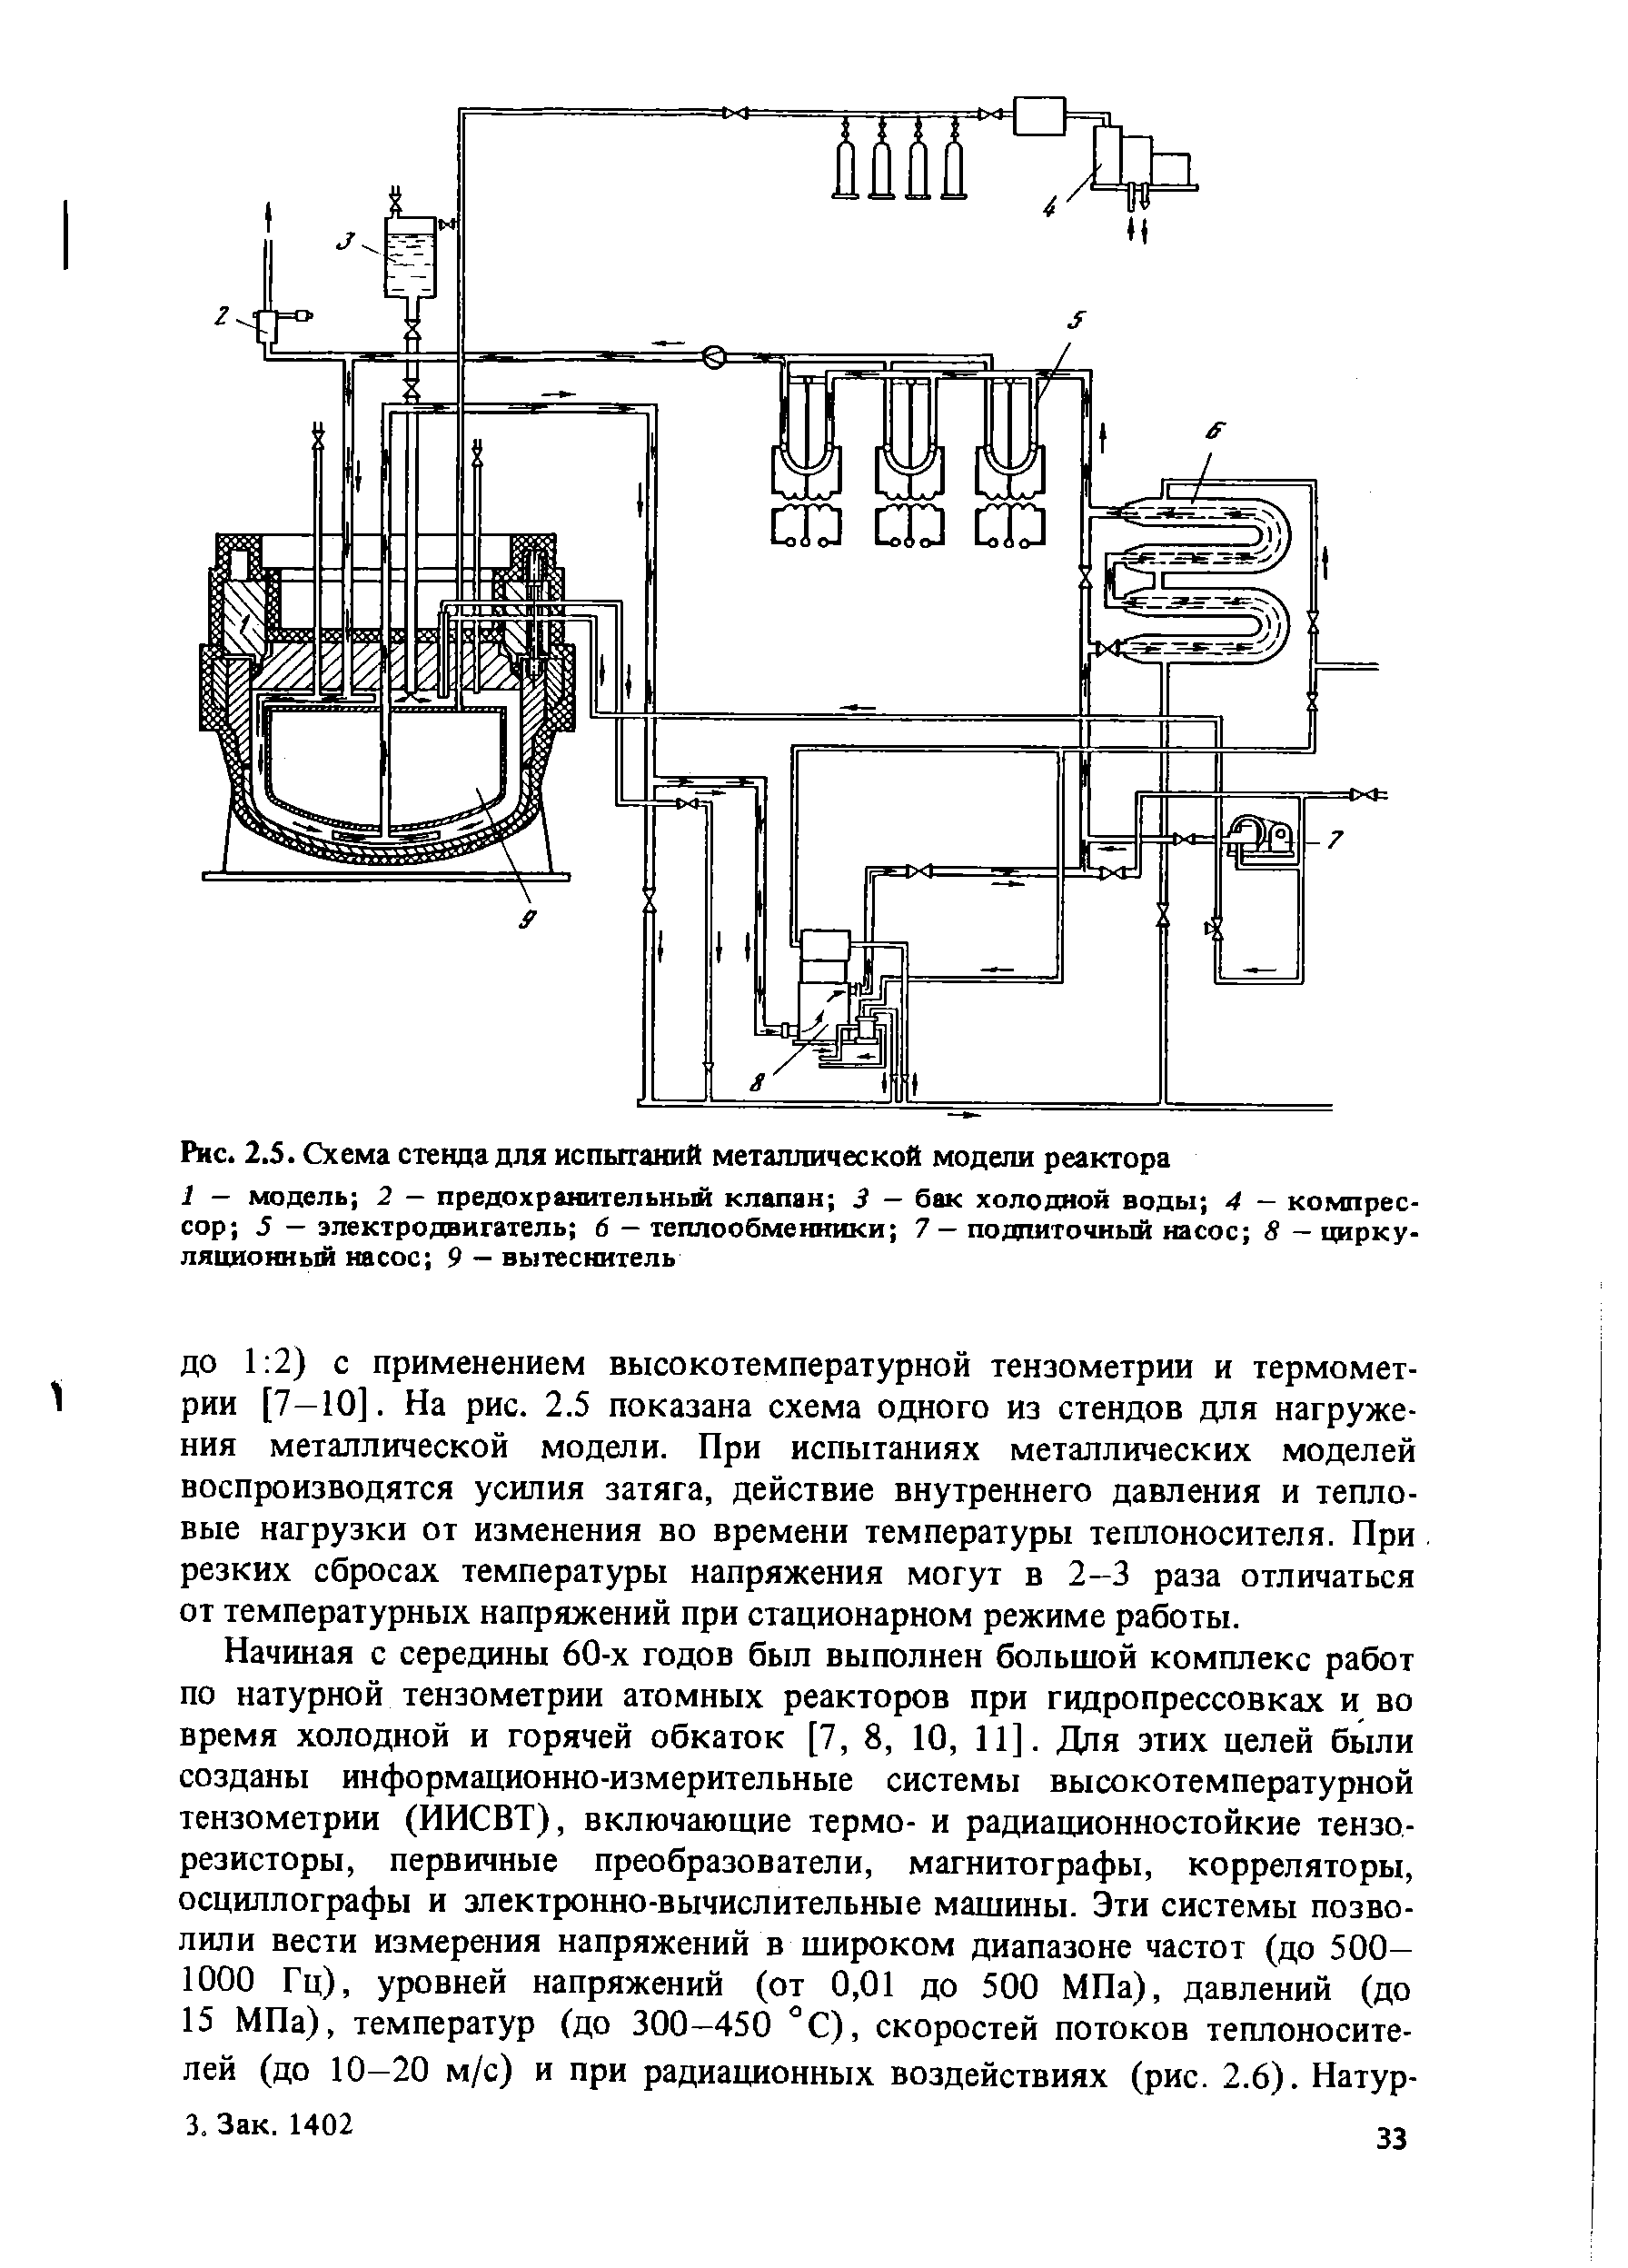 Рис. 2.5. Схема стенда для испытаний металлической модели реактора
